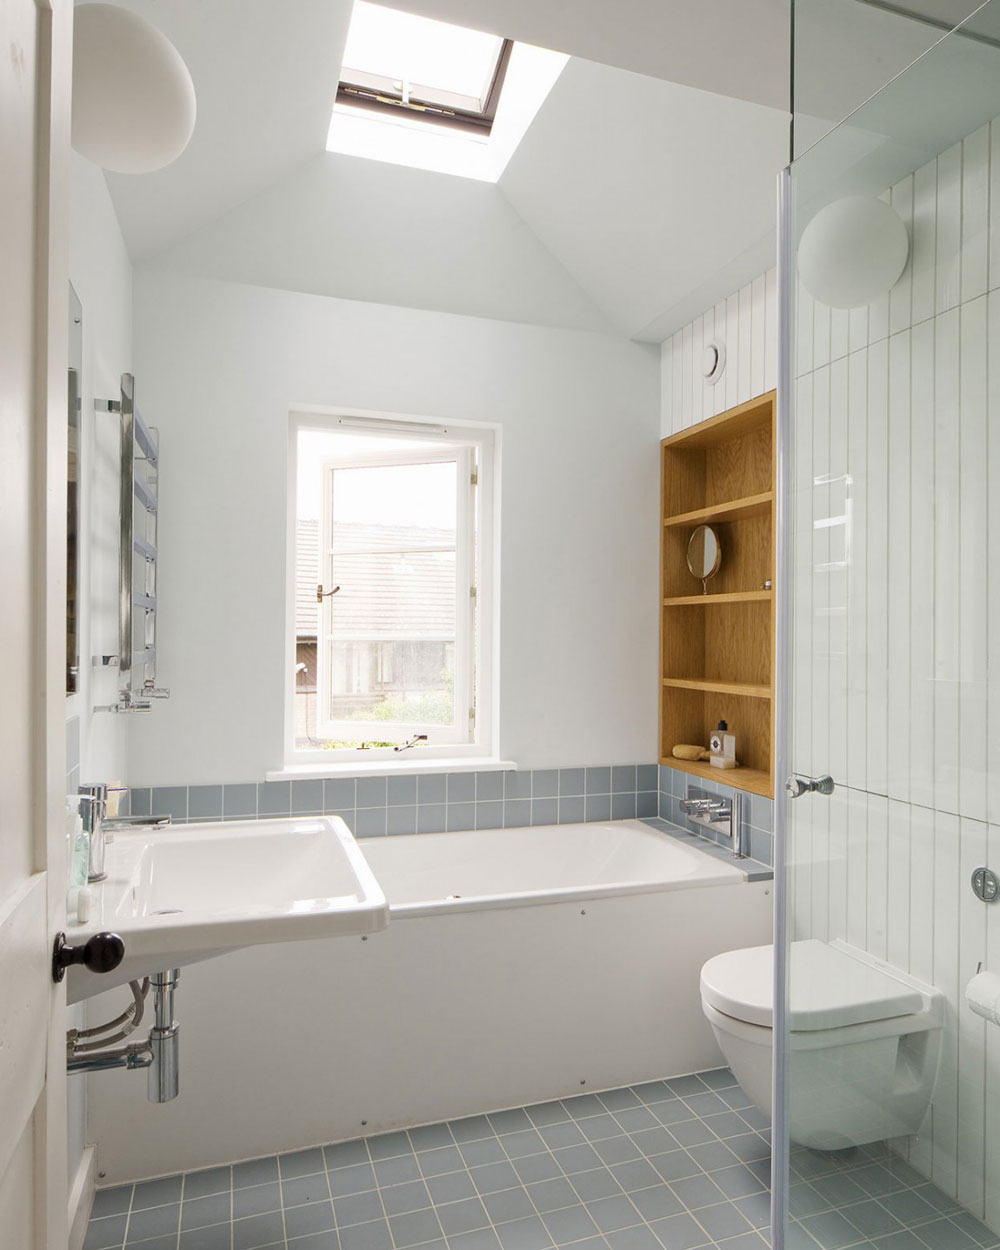 Bathroom-Interior-Design-Pictures-7 Bathroom Interior Design Pictures That Are Available To Help Inspire You